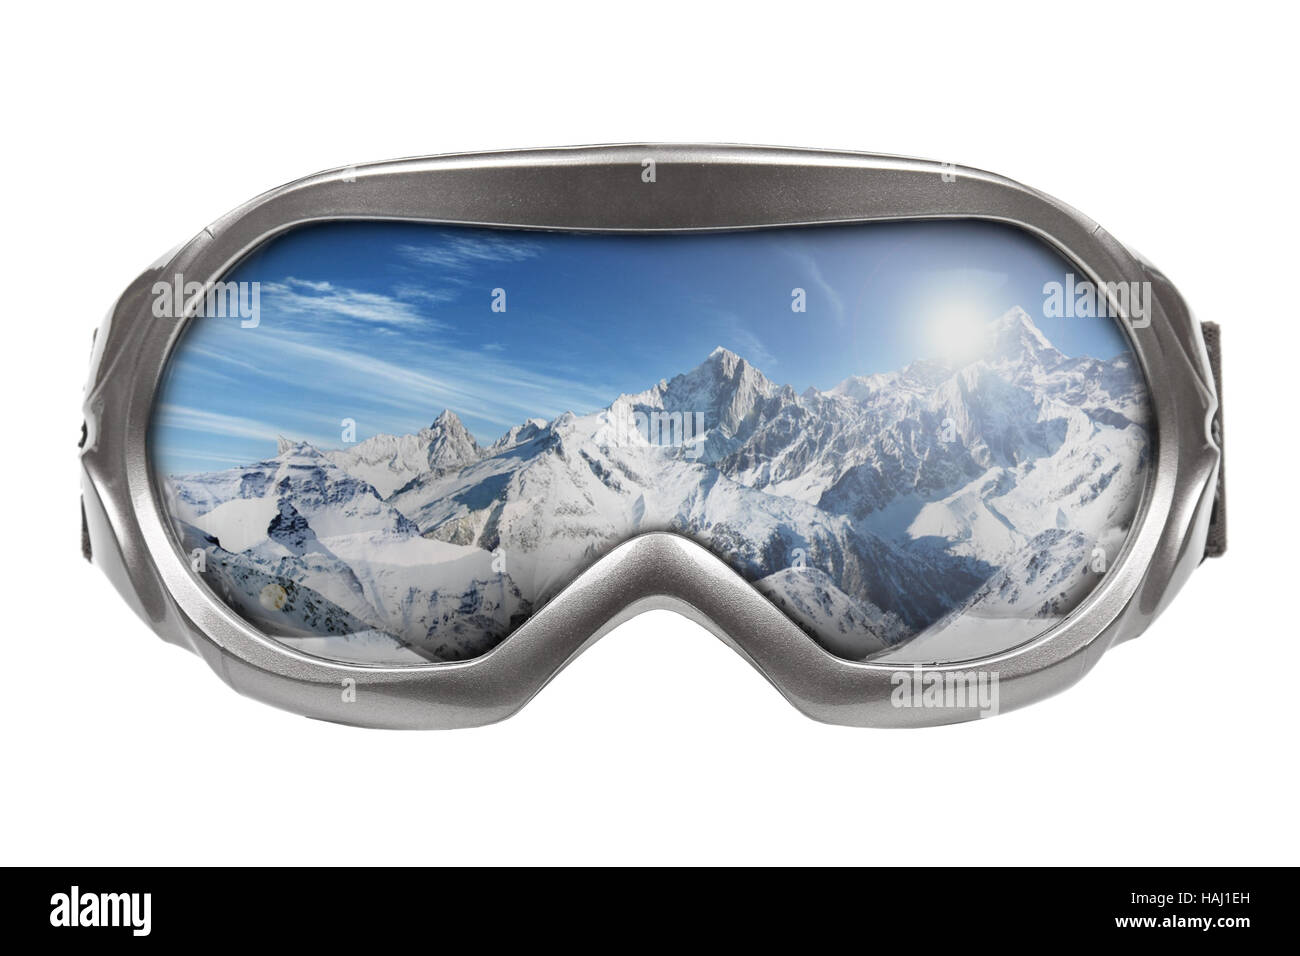 Lunettes de ski avec la réflexion de la montagne isolated on white Banque D'Images